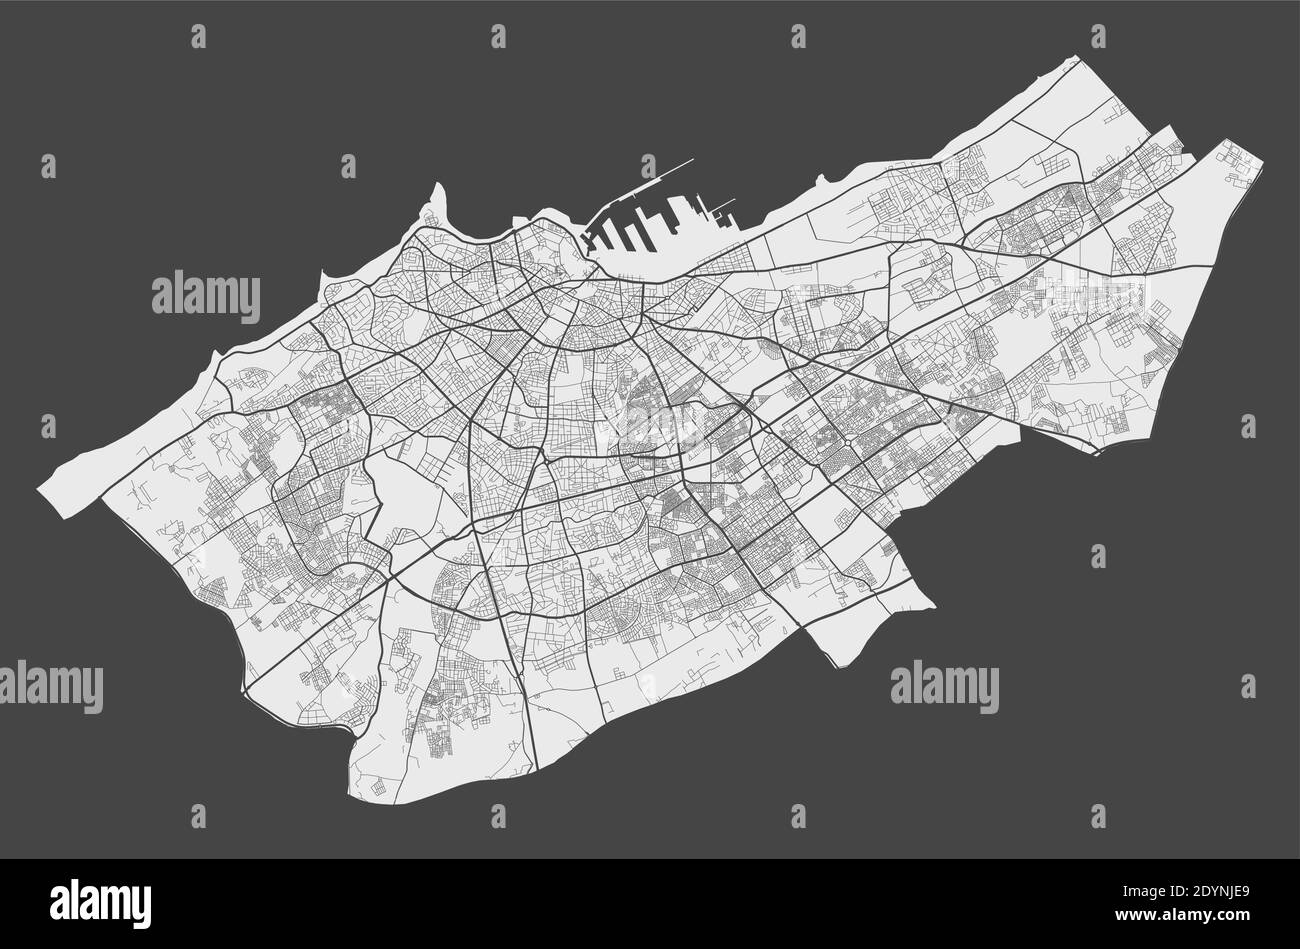 Karte Casablanca. Detaillierte Karte von Casablanca Stadt Verwaltungsgebiet. Stadtbild-Panorama. Lizenzfreie Vektorgrafik. Übersichtskarte mit Autobahnen, Stock Vektor